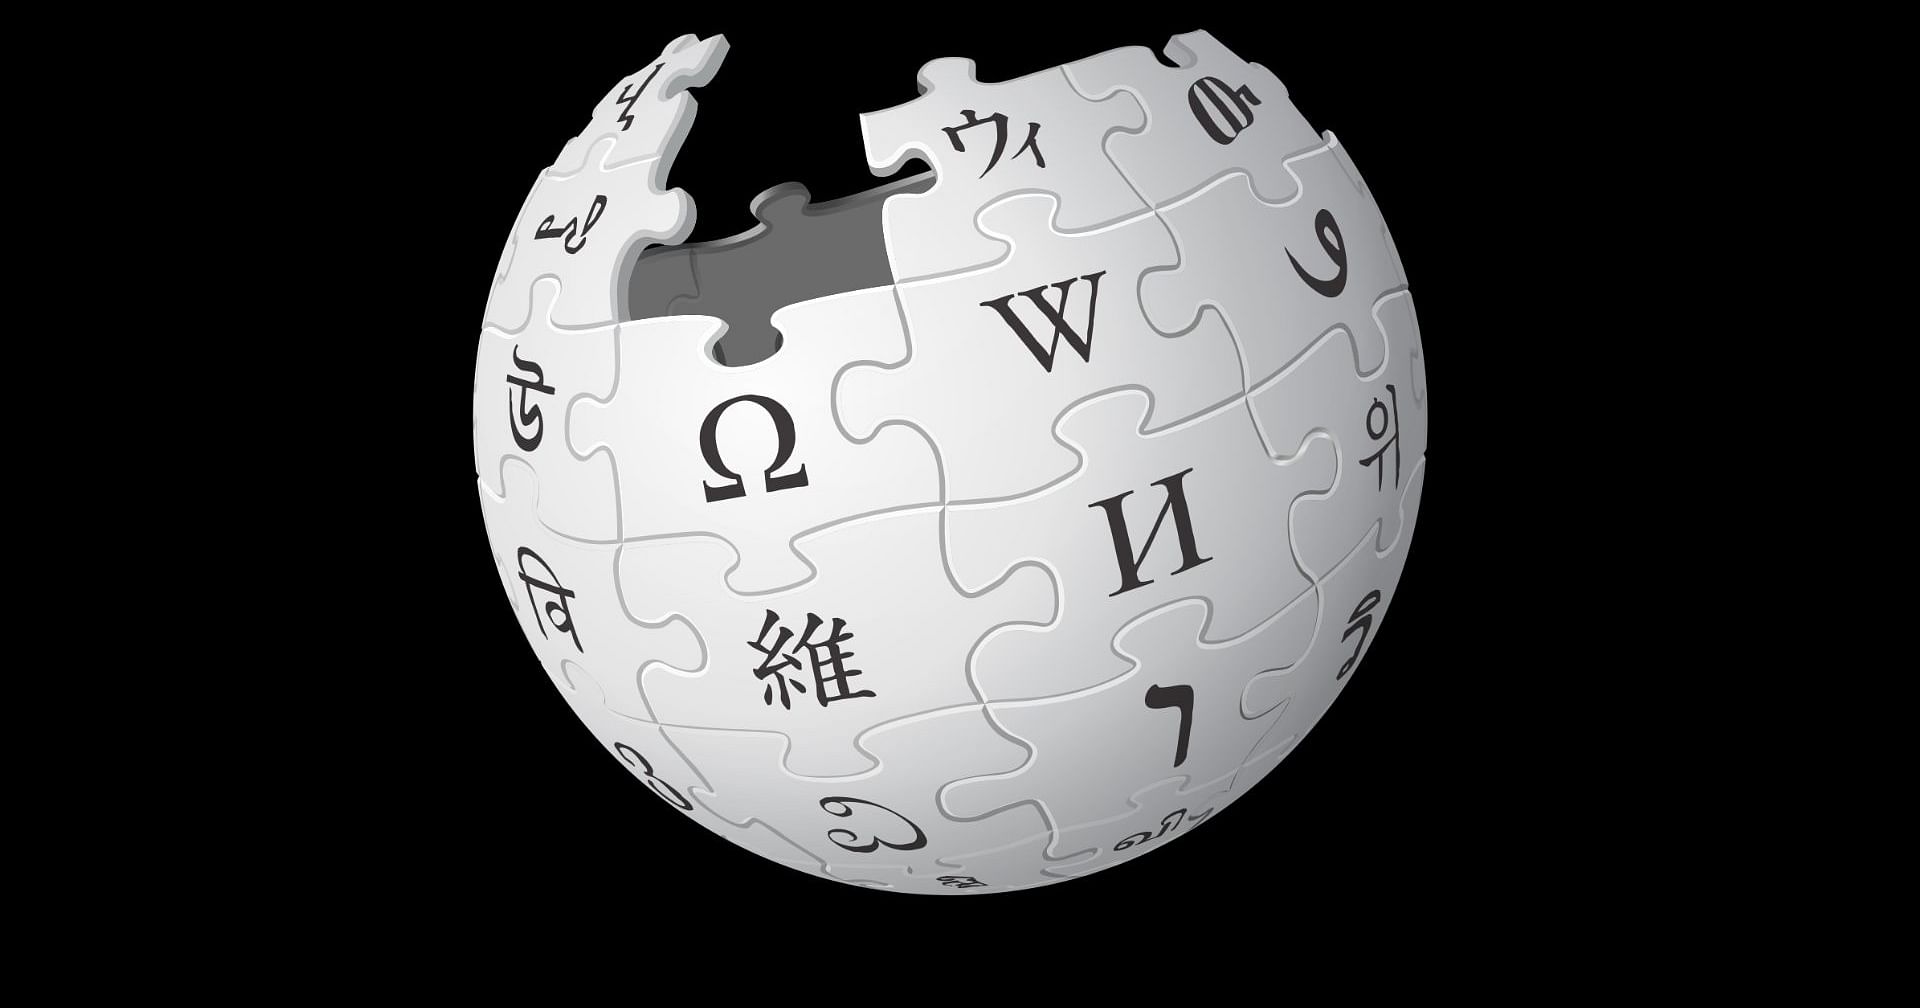 Альтернативная свободная. Википедия картинки. Значок Википедии. Википедия логотип. Википедия (интернет-энциклопедия).